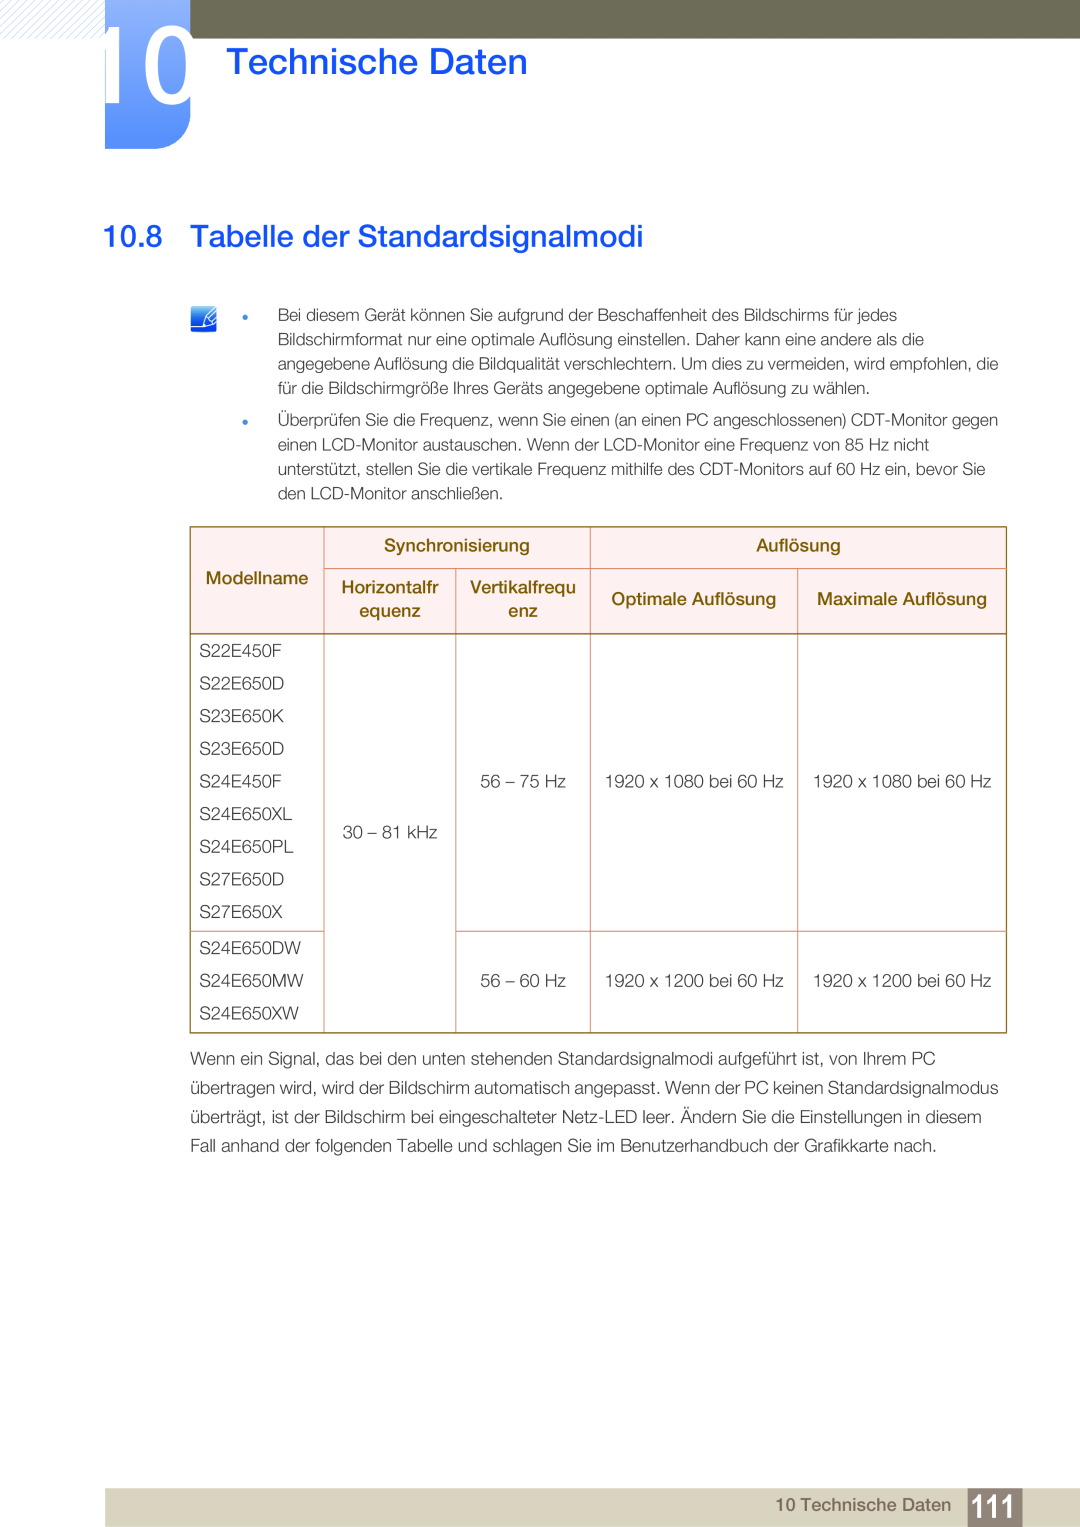 Samsung LS24E65UDW/EN Tabelle der Standardsignalmodi, Technische Daten, Synchronisierung, Auflösung, Modellname, equenz 